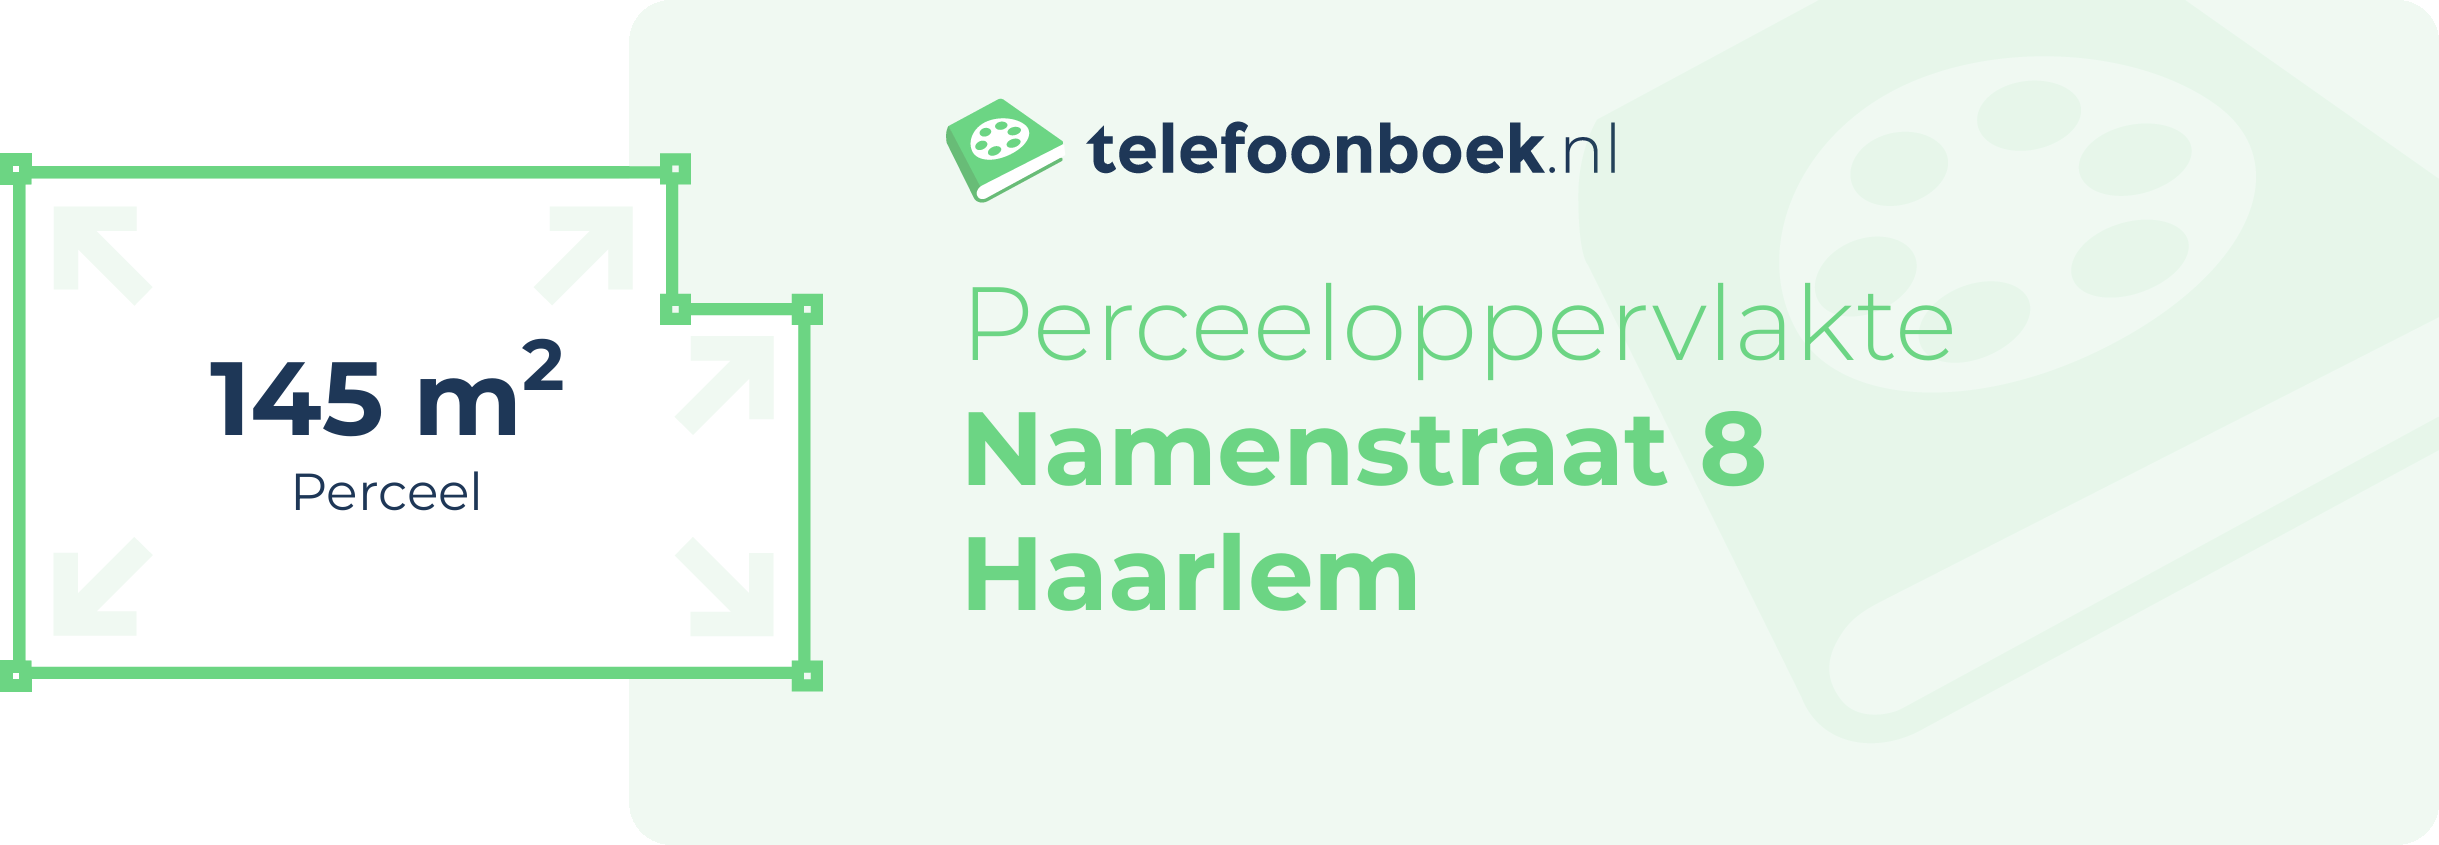 Perceeloppervlakte Namenstraat 8 Haarlem